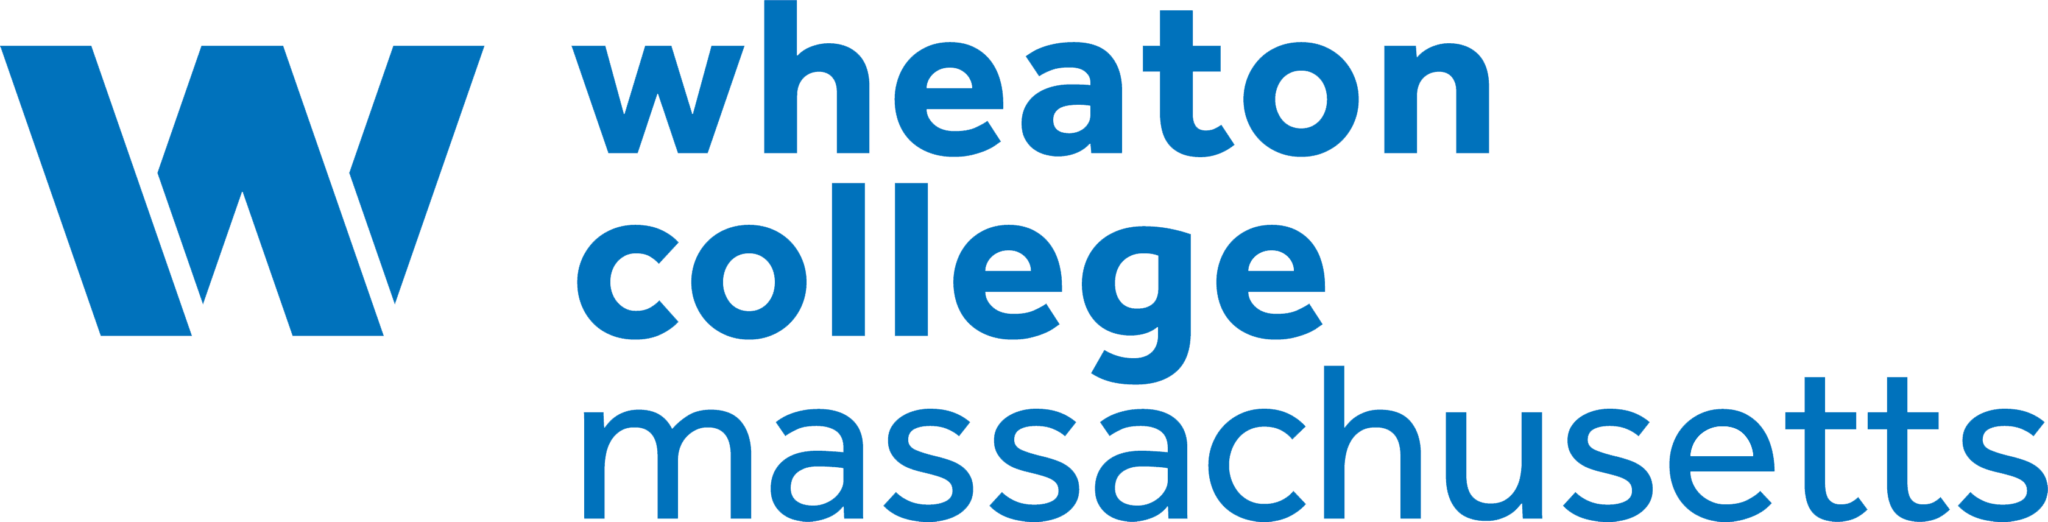 Wheaton College Massachusetts GBSN